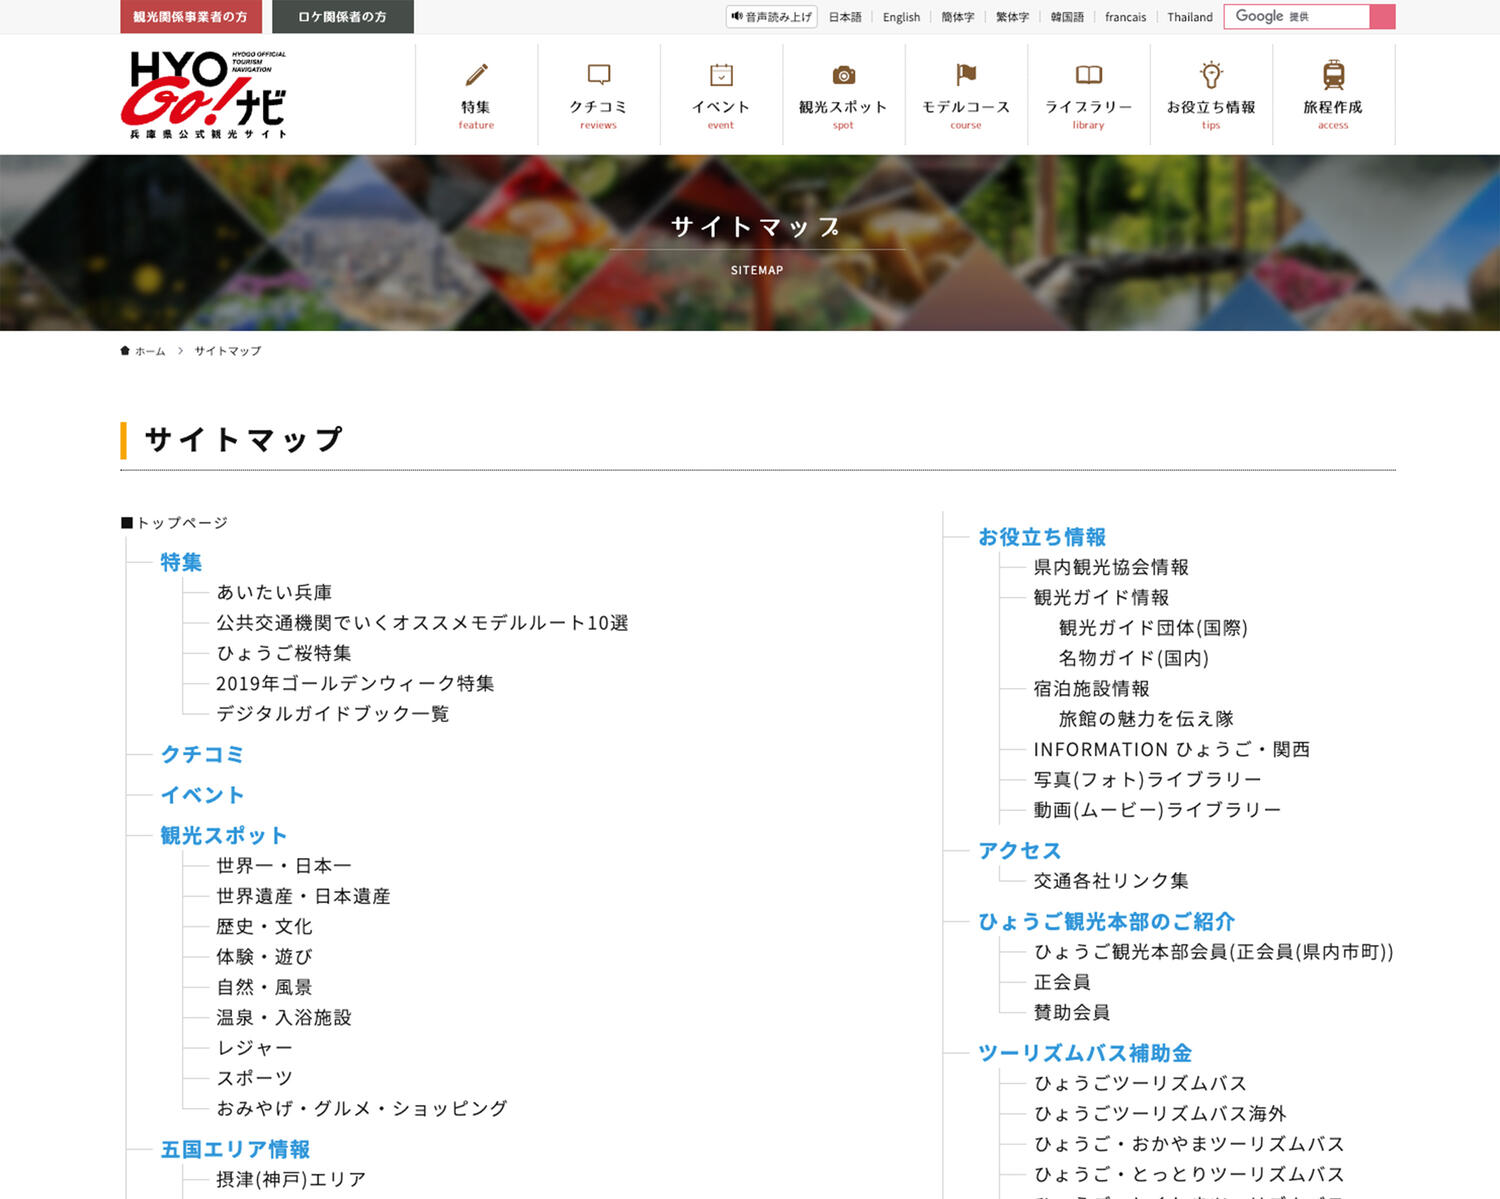 兵庫県公式観光サイト HYOGO！ナビ サイトマップ